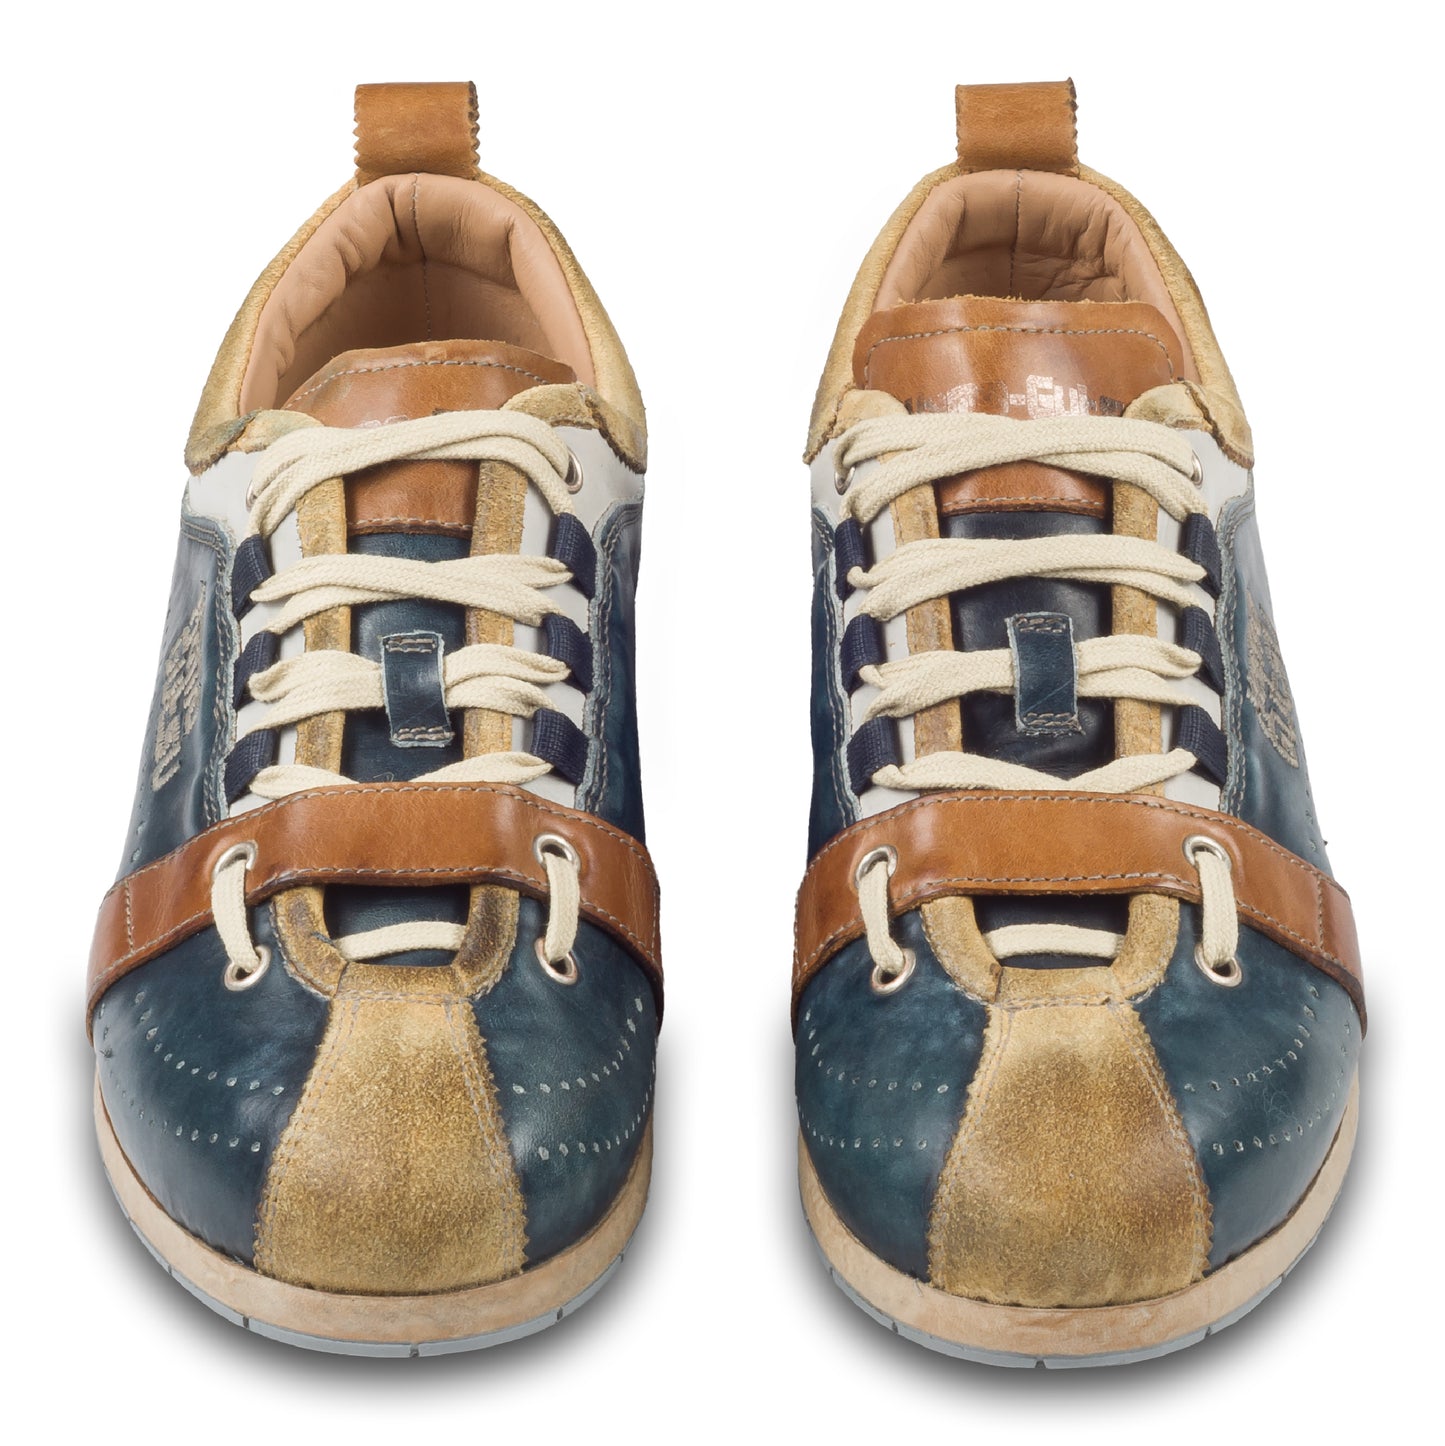 KAMO-GUTSU Herren Leder Sneaker in blau/beige/braun, Retro-Optik. Modell TIFO-017 miele + navy. Handgefertigt in Italien. Paarweise Ansicht von vorne.  